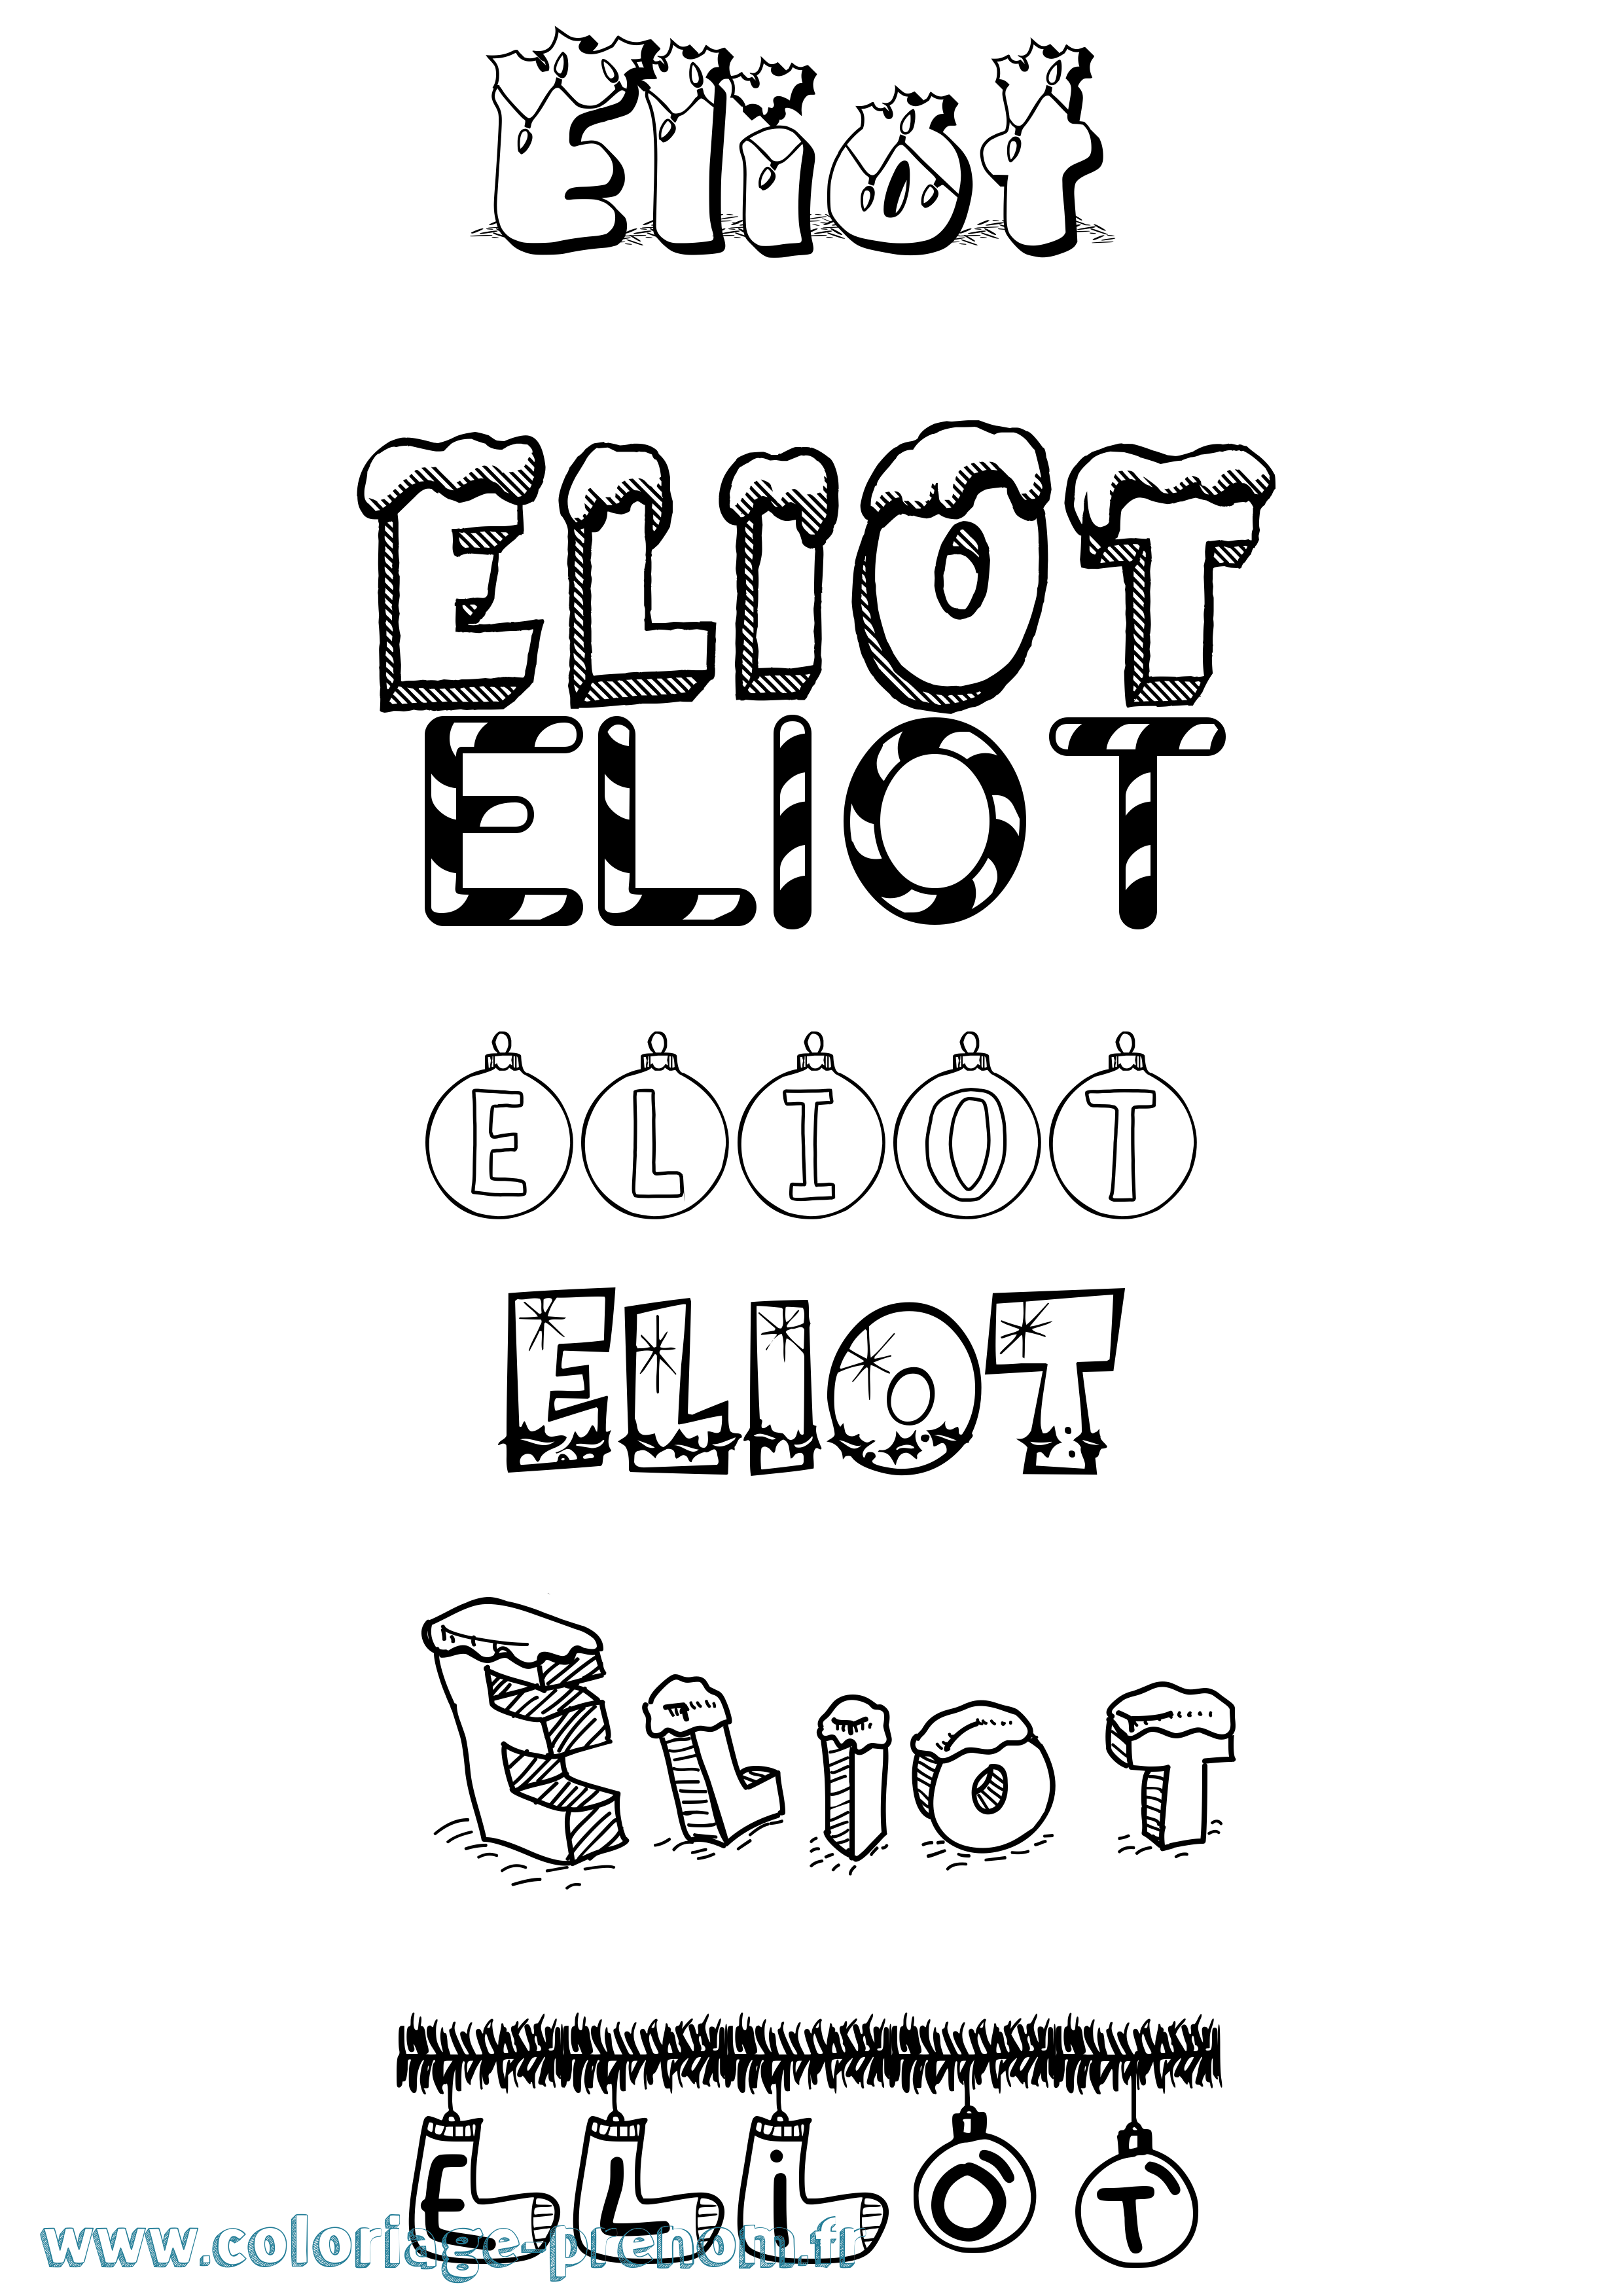 Coloriage prénom Eliot